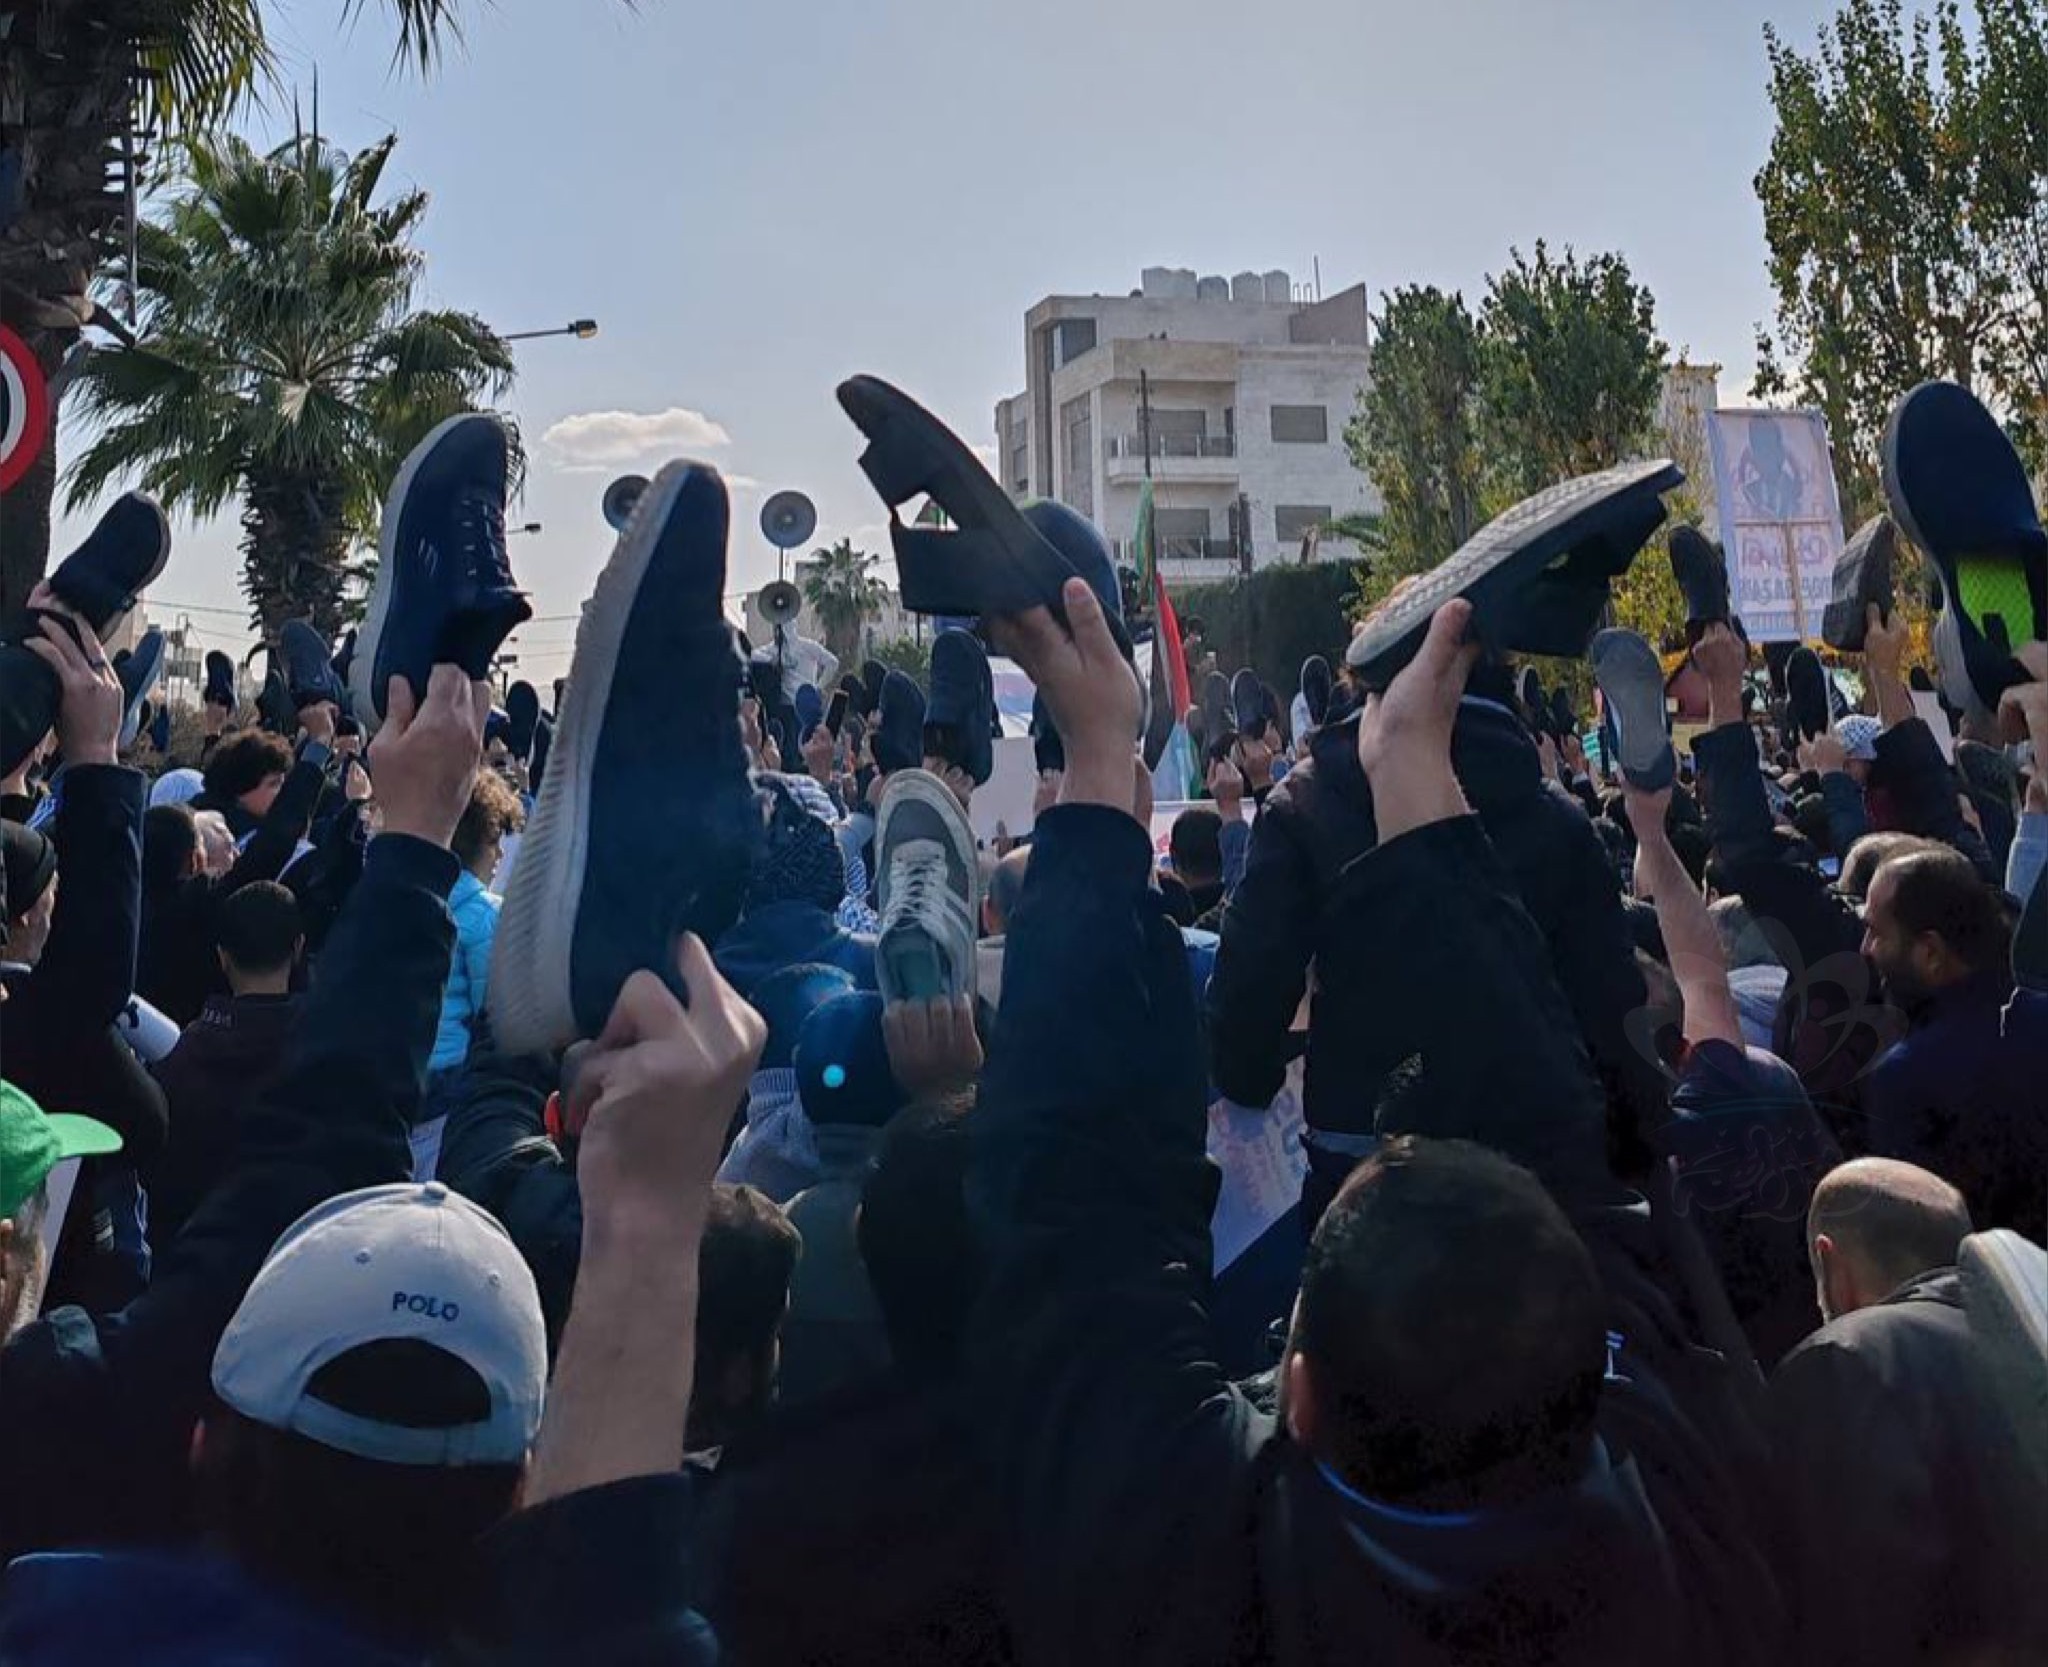 آلاف الاردنيين قرب السفارة الامريكية: يا غولاني يا جبان.. هذا الصوت من عمان - فيديو وصور